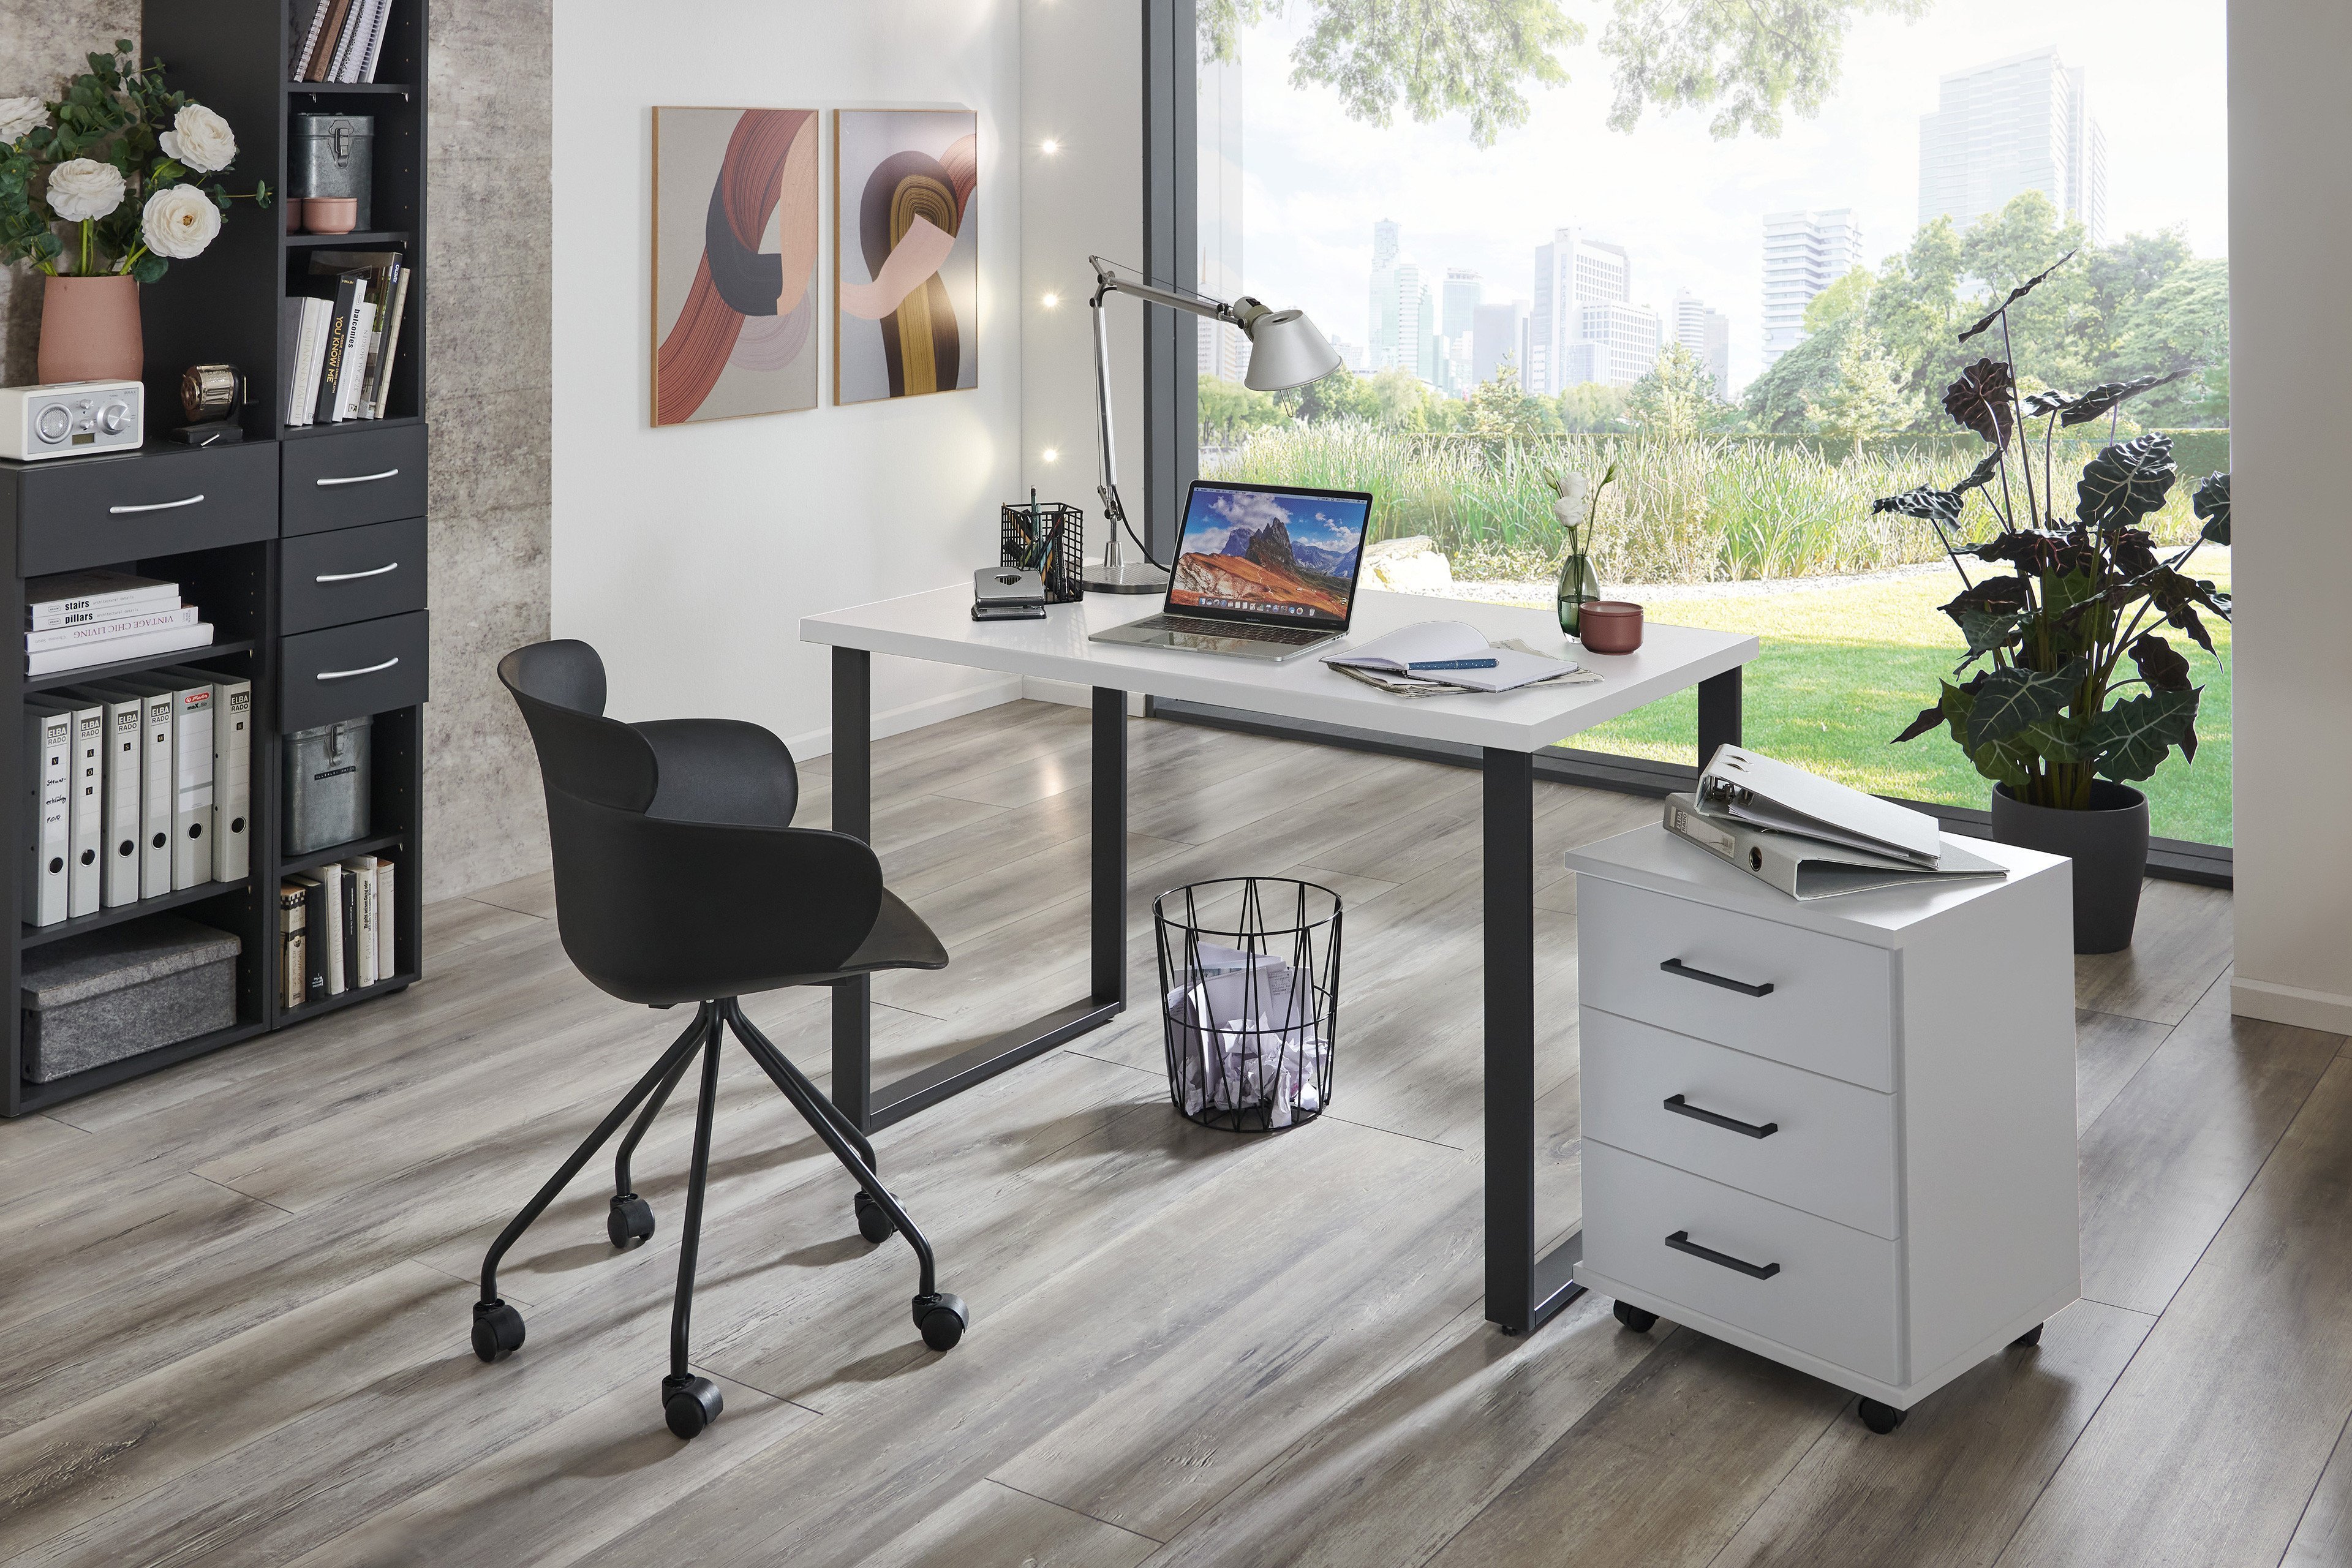 Online-Shop Home weiß Schreibtisch Möbel Desk Wimex Letz Ihr | -